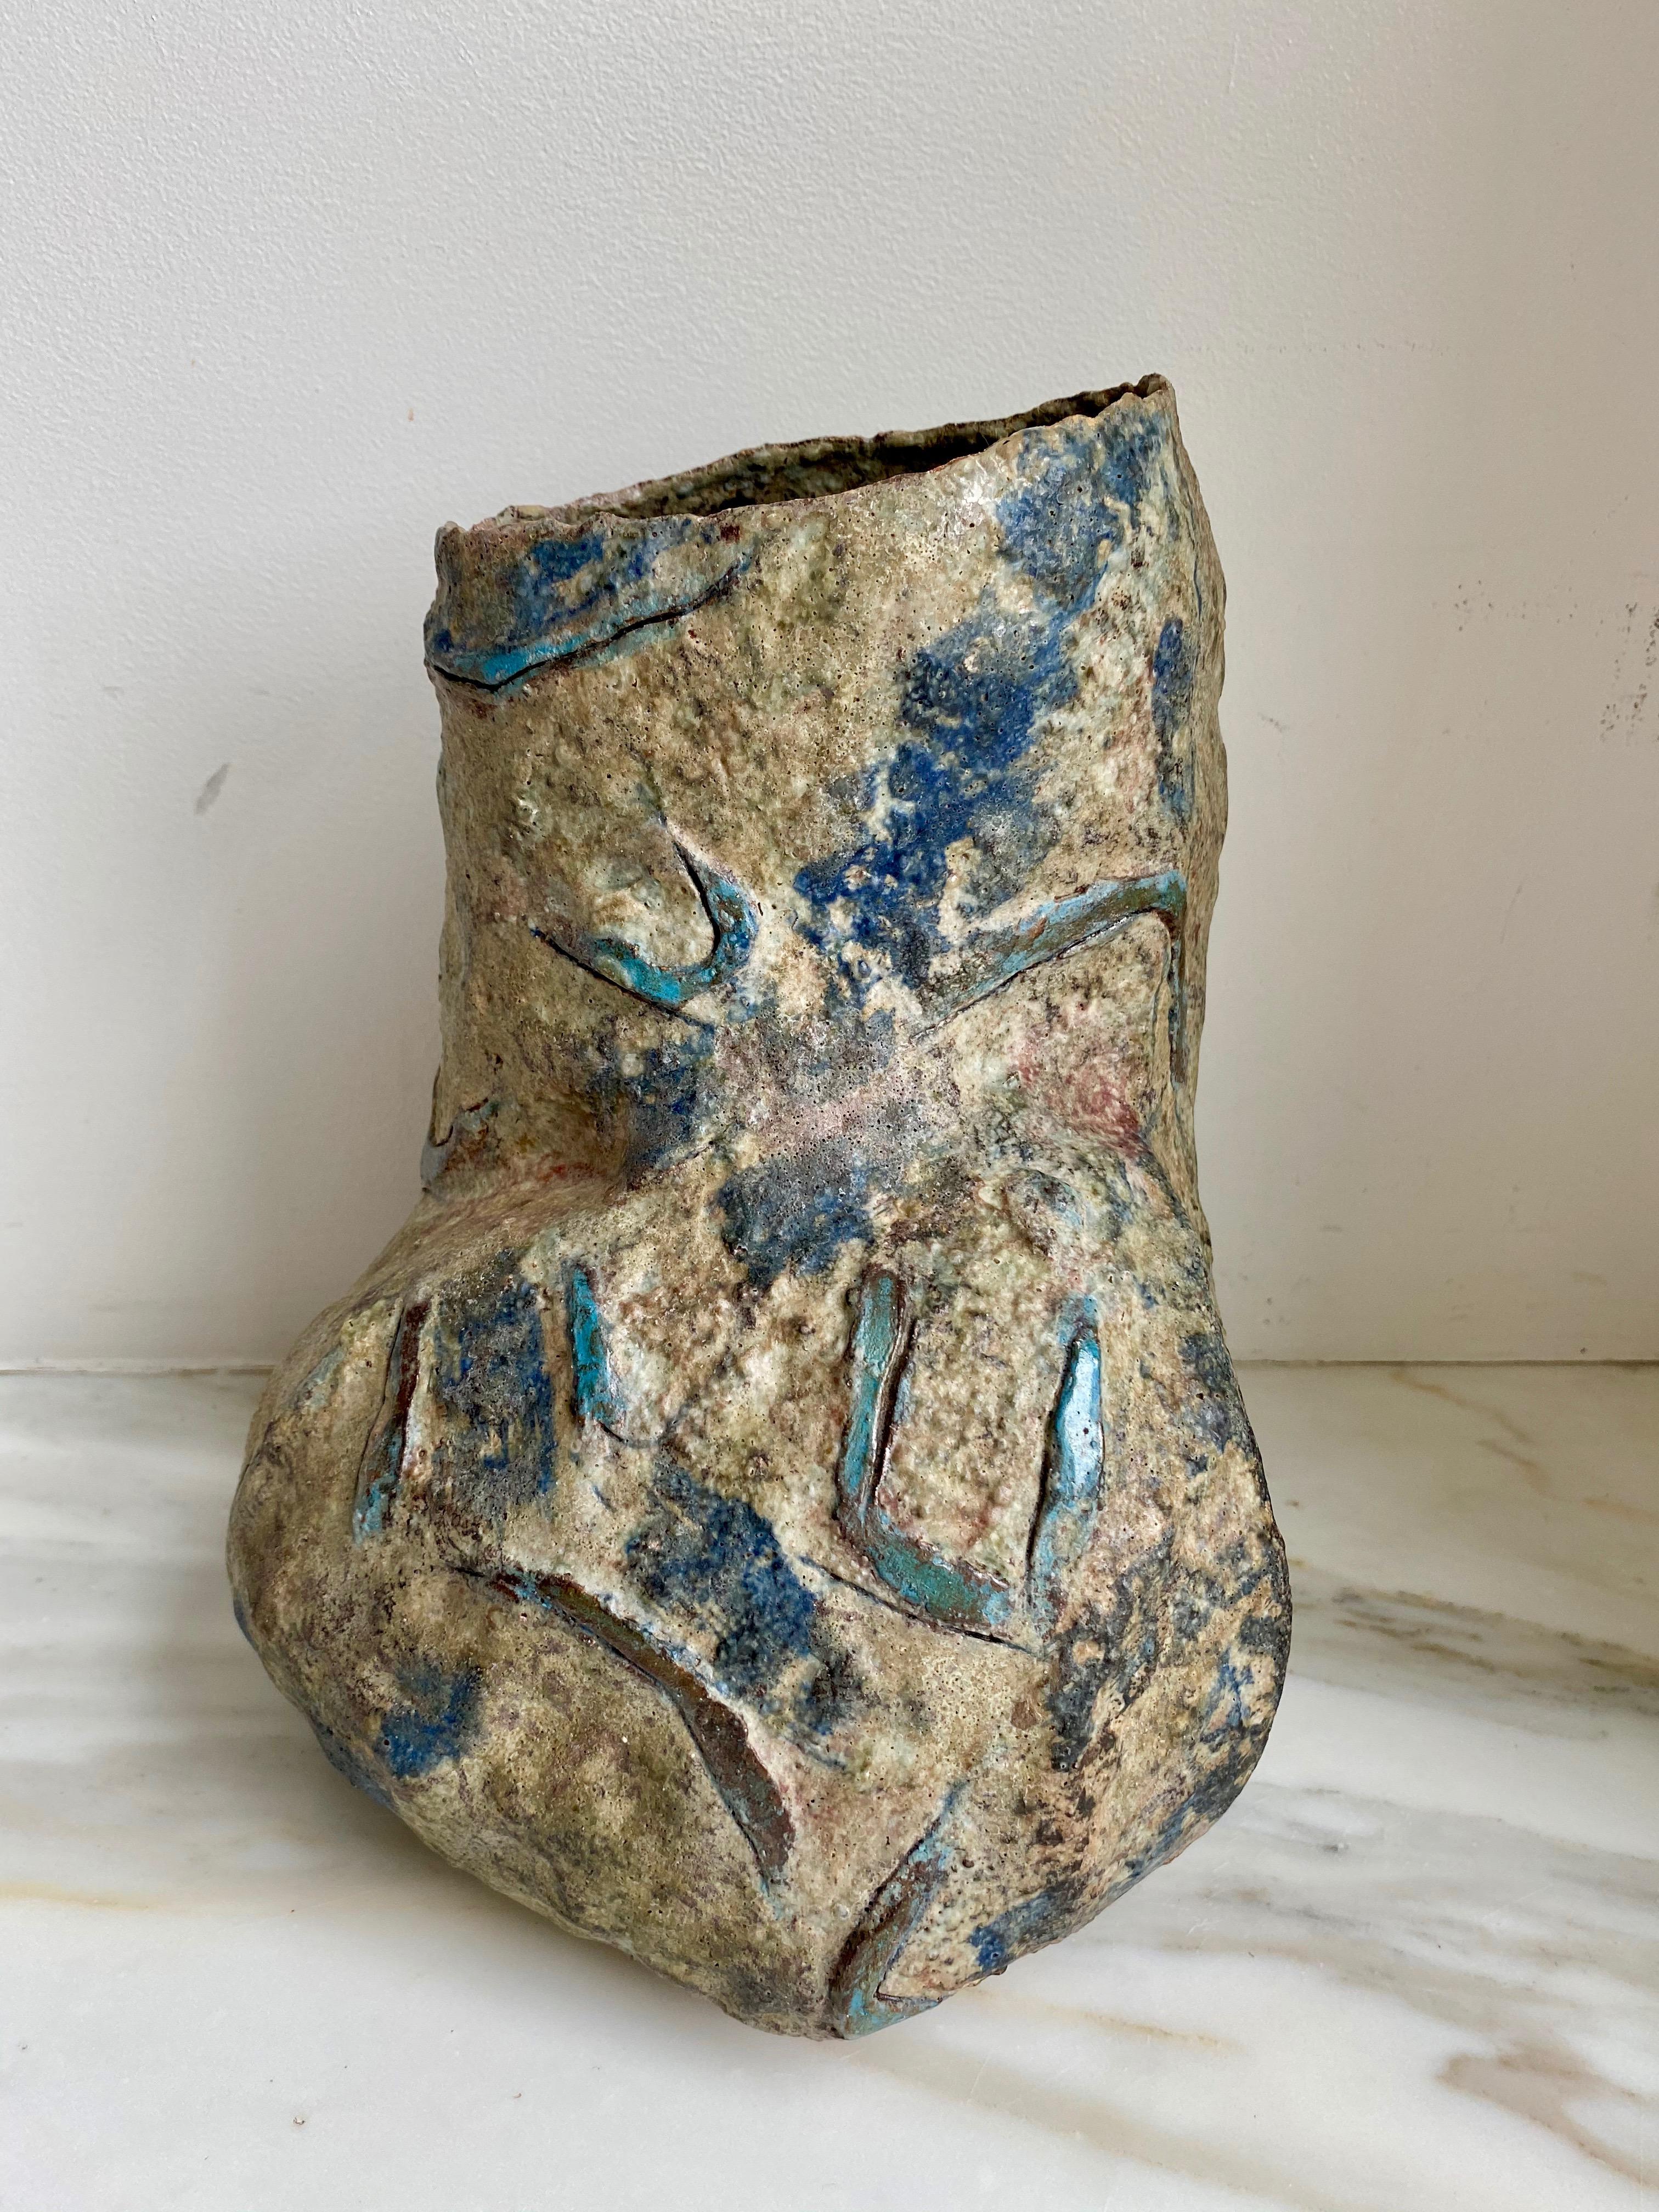 Récipient sculptural asymétrique en grès avec surface rugueuse et irrégulière et symboles géométriques bleus incisés 

Fabriqué à la main par Sara Radstone

Grande-Bretagne, années 1990.